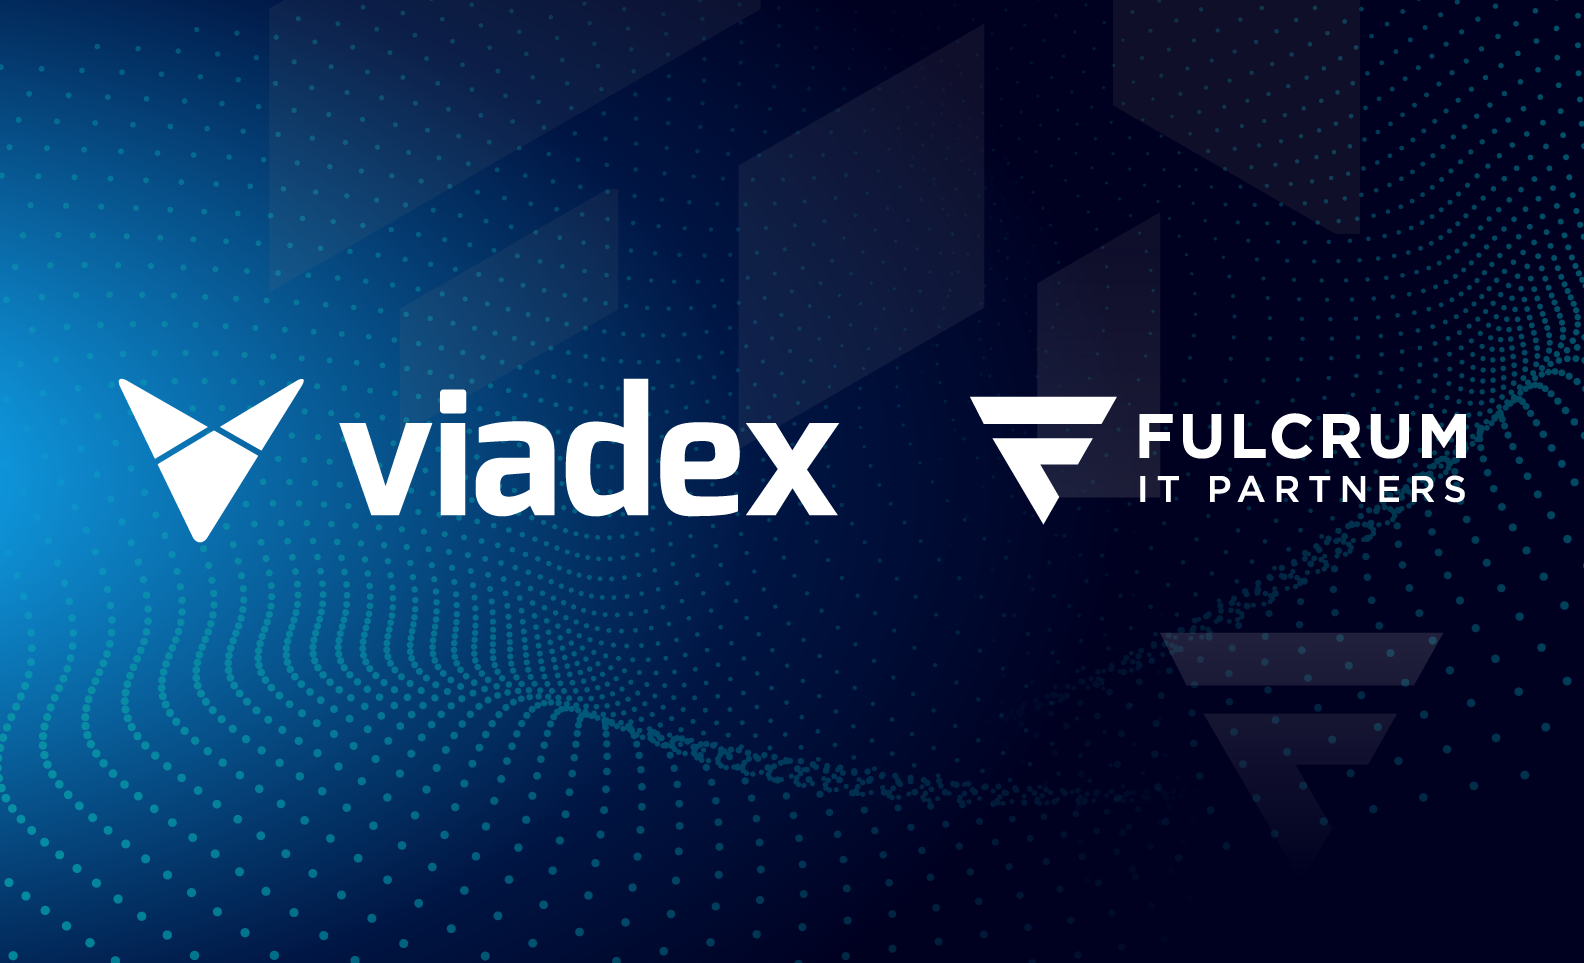 Fulcrum IT Partners (“Fulcrum”) announces the acquisition of Viadex Ltd.